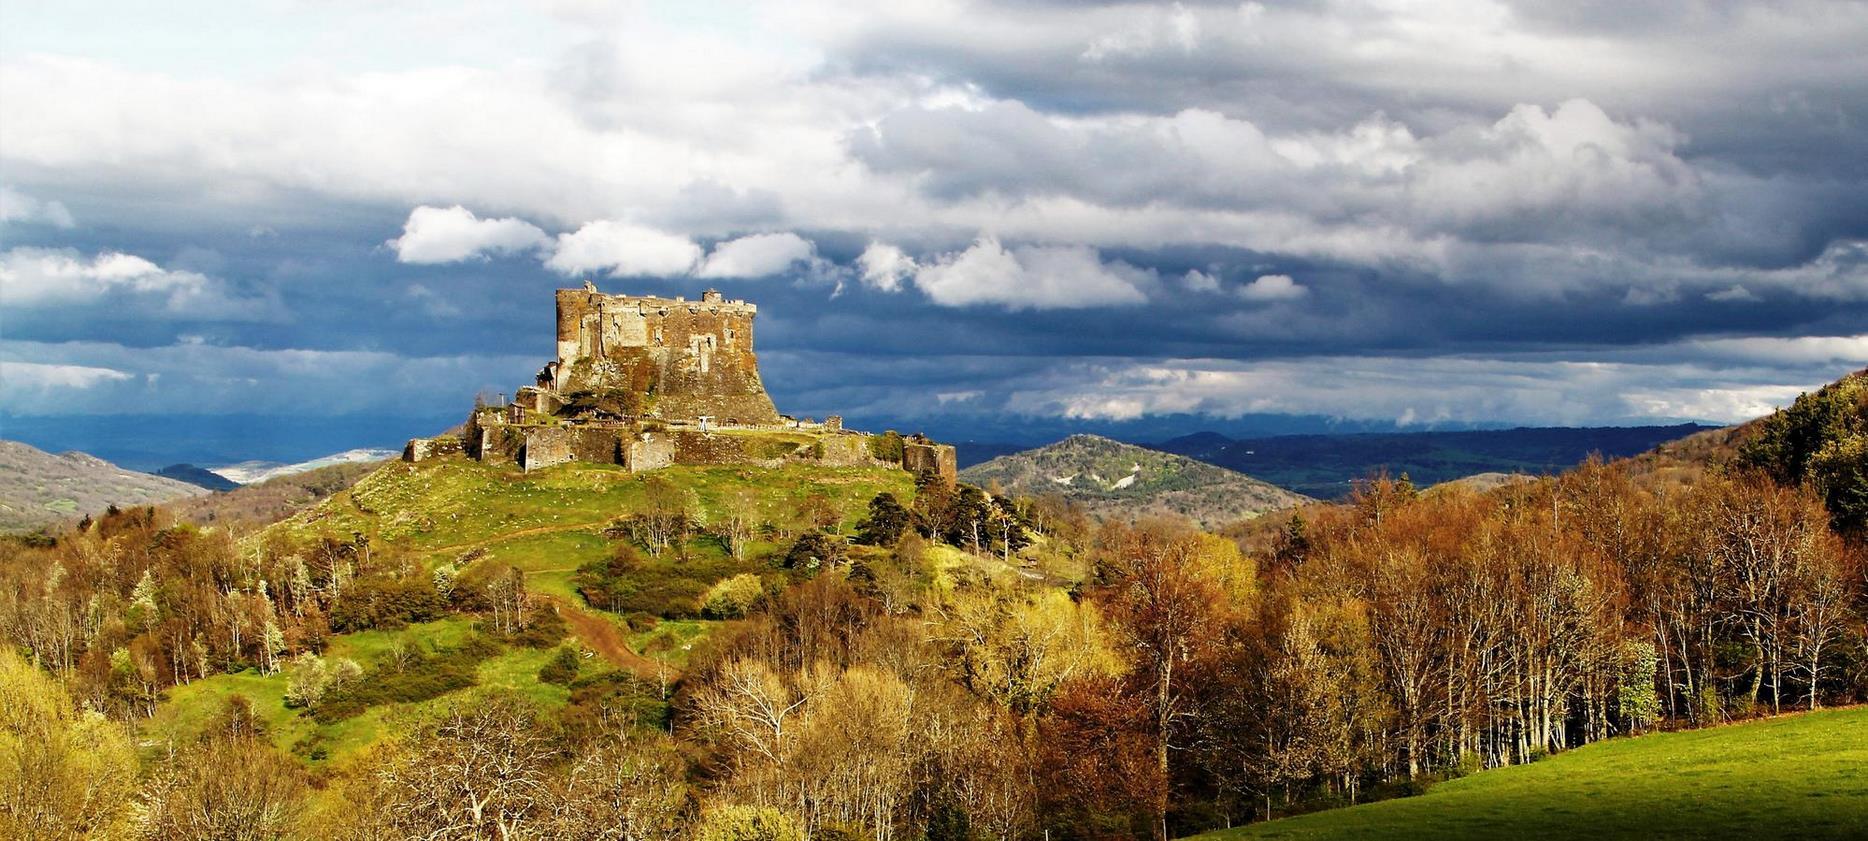 le Chateau de Murol, chateau fort en Auvergne